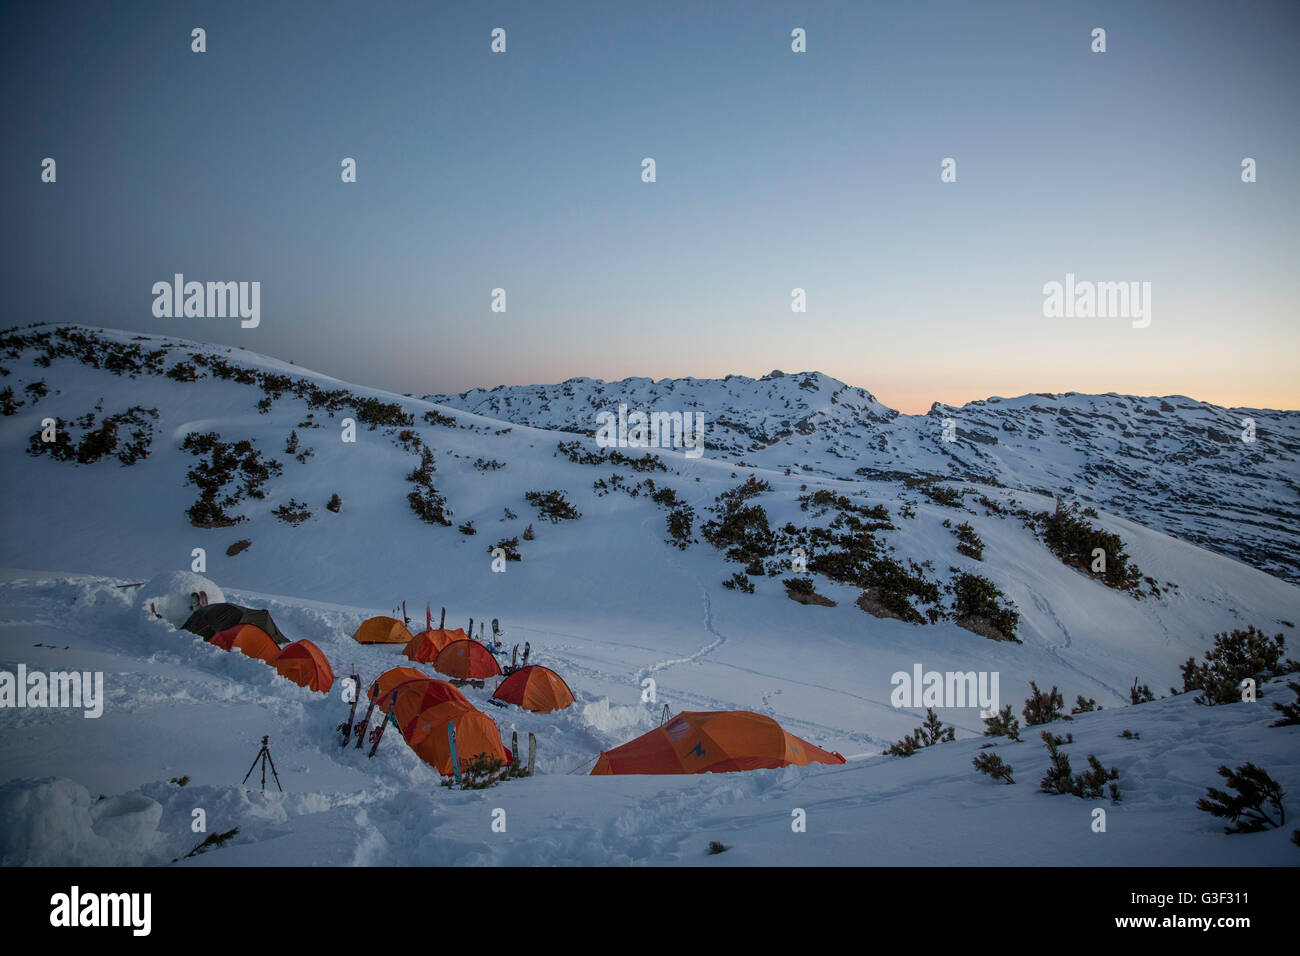 Il camp di tende in inverno al mattino Foto Stock